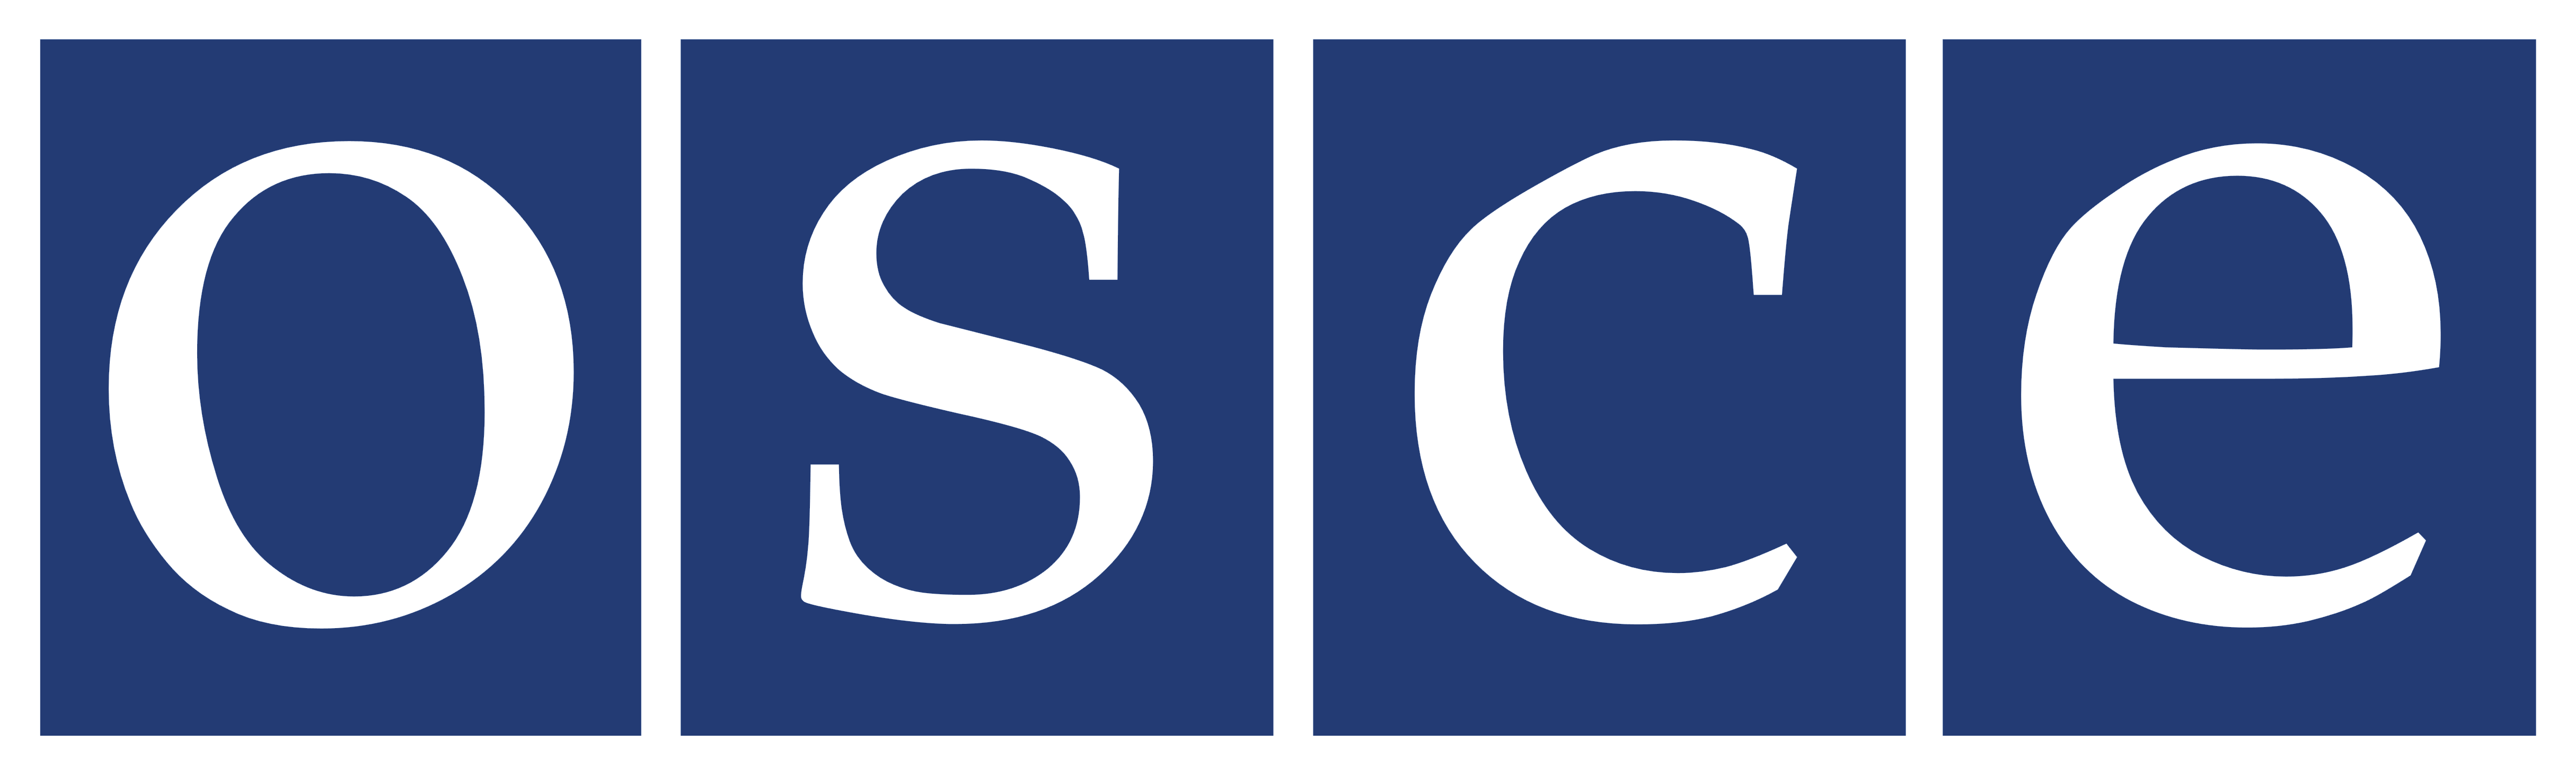 OSCE logo, logotype